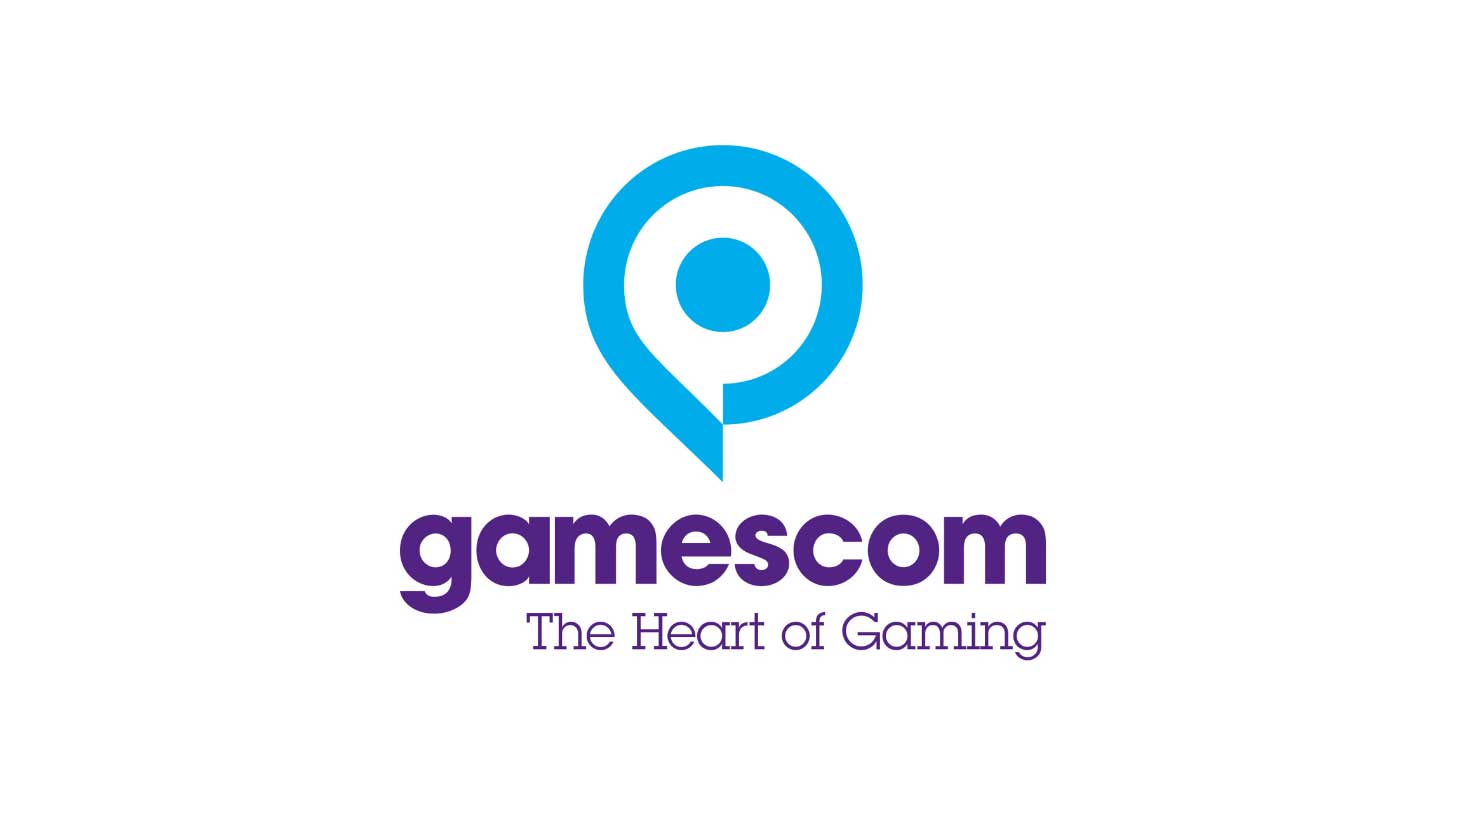 x gamescom logo mit claim 48590511822 o NEU QUADRAT babt